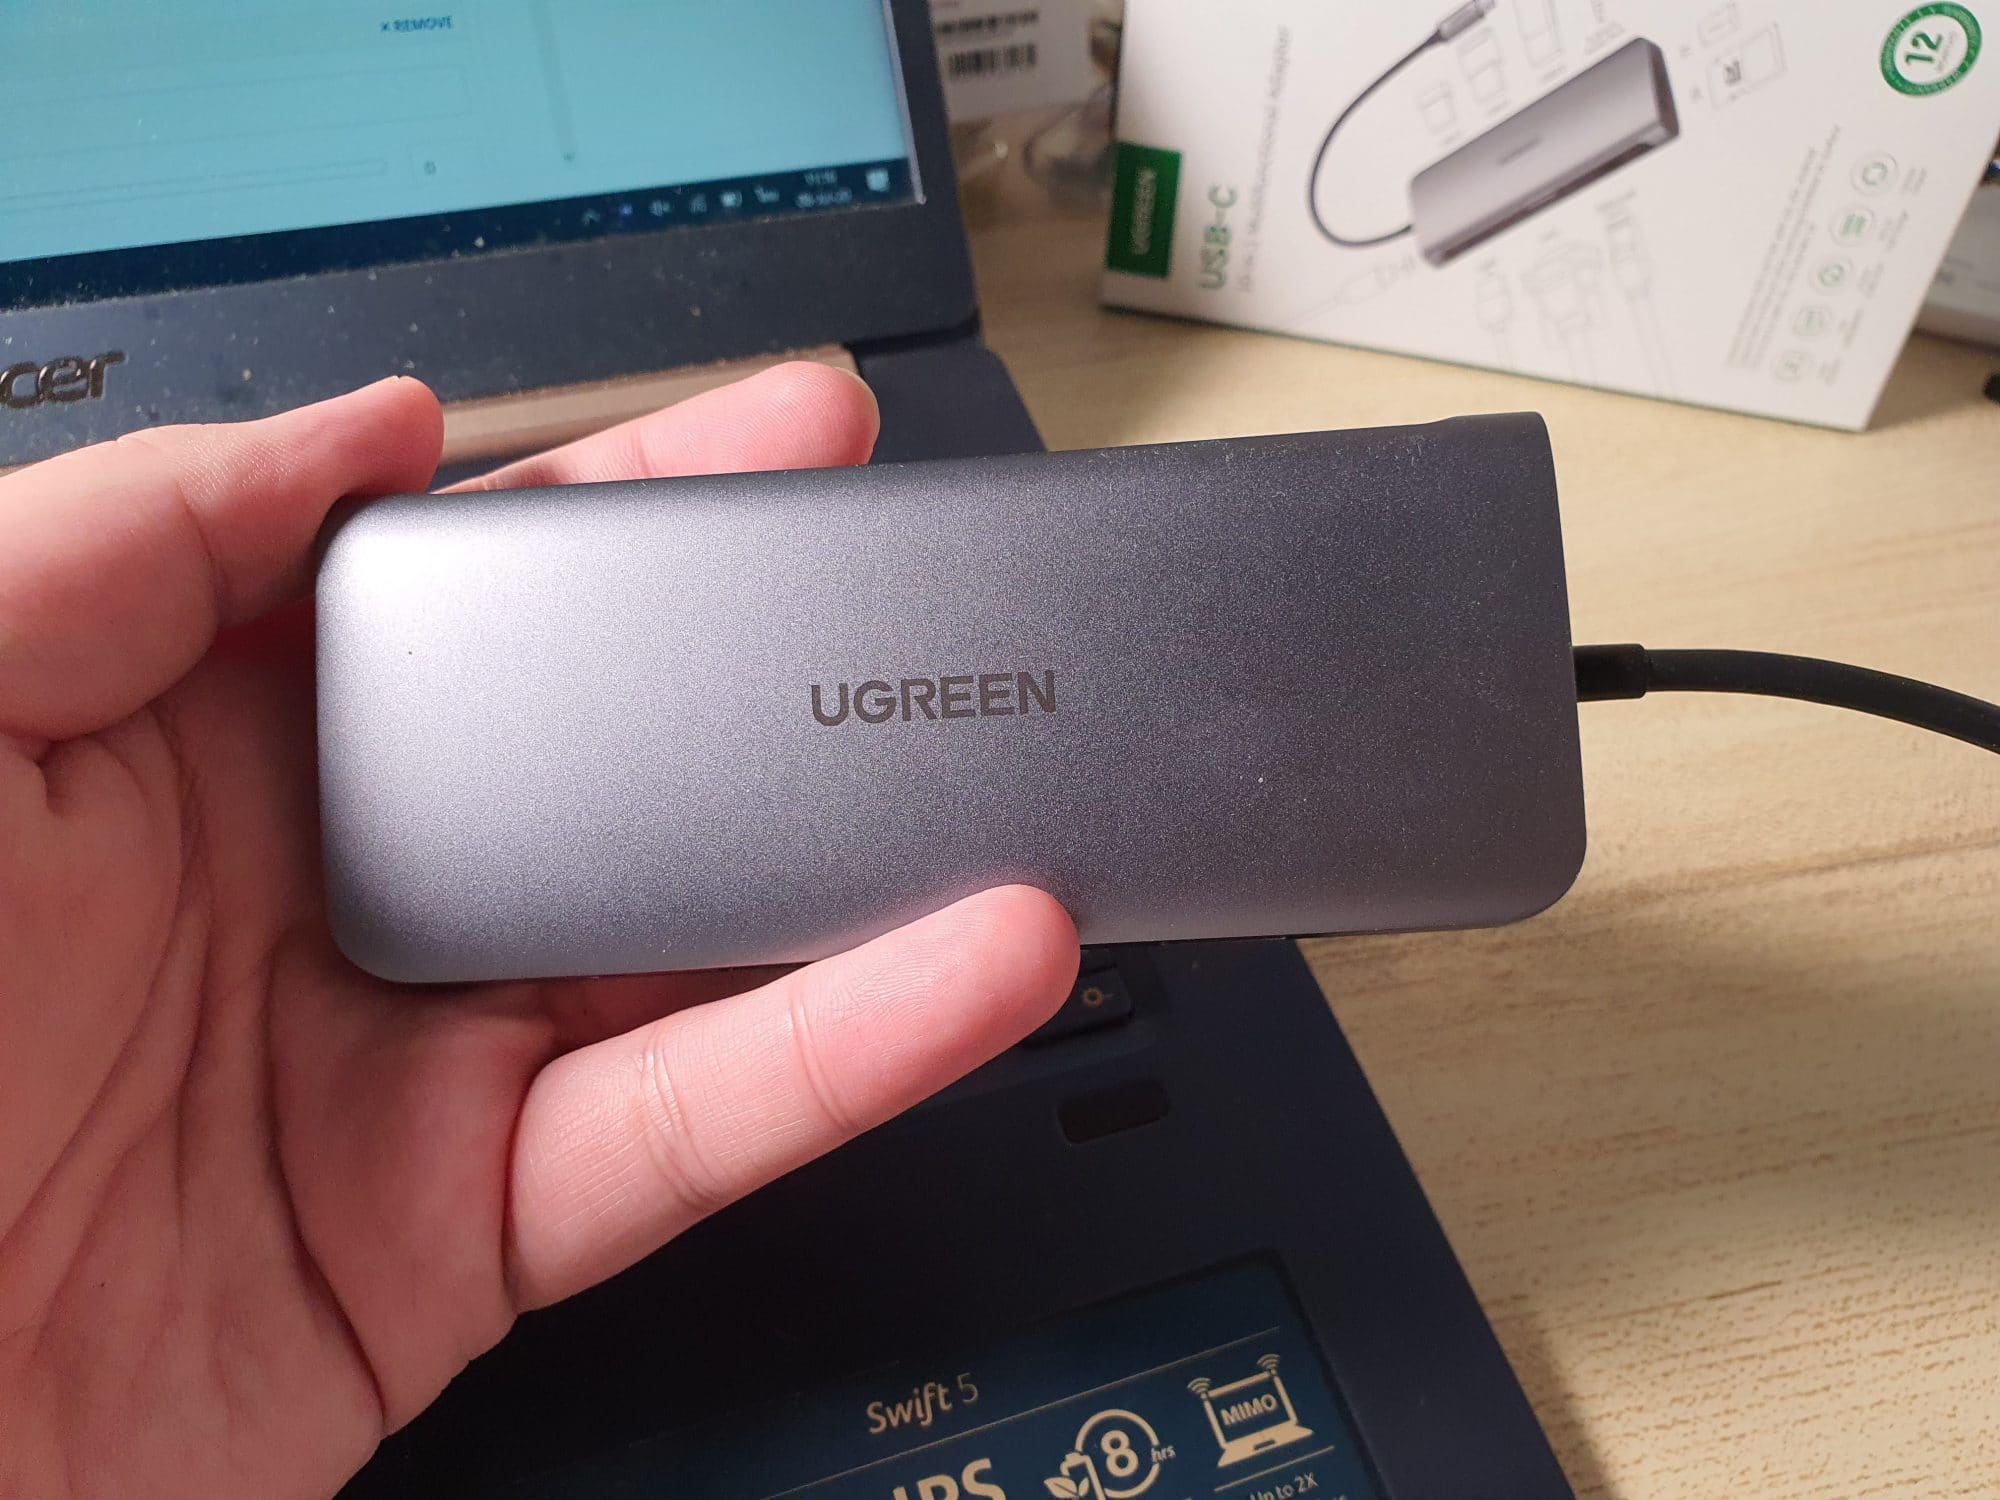 รีวิว UGREEN USB-C Hub 10 in 1 เพิ่มพอร์ตให้โน้ตบุ๊คแบบสะใจ 3